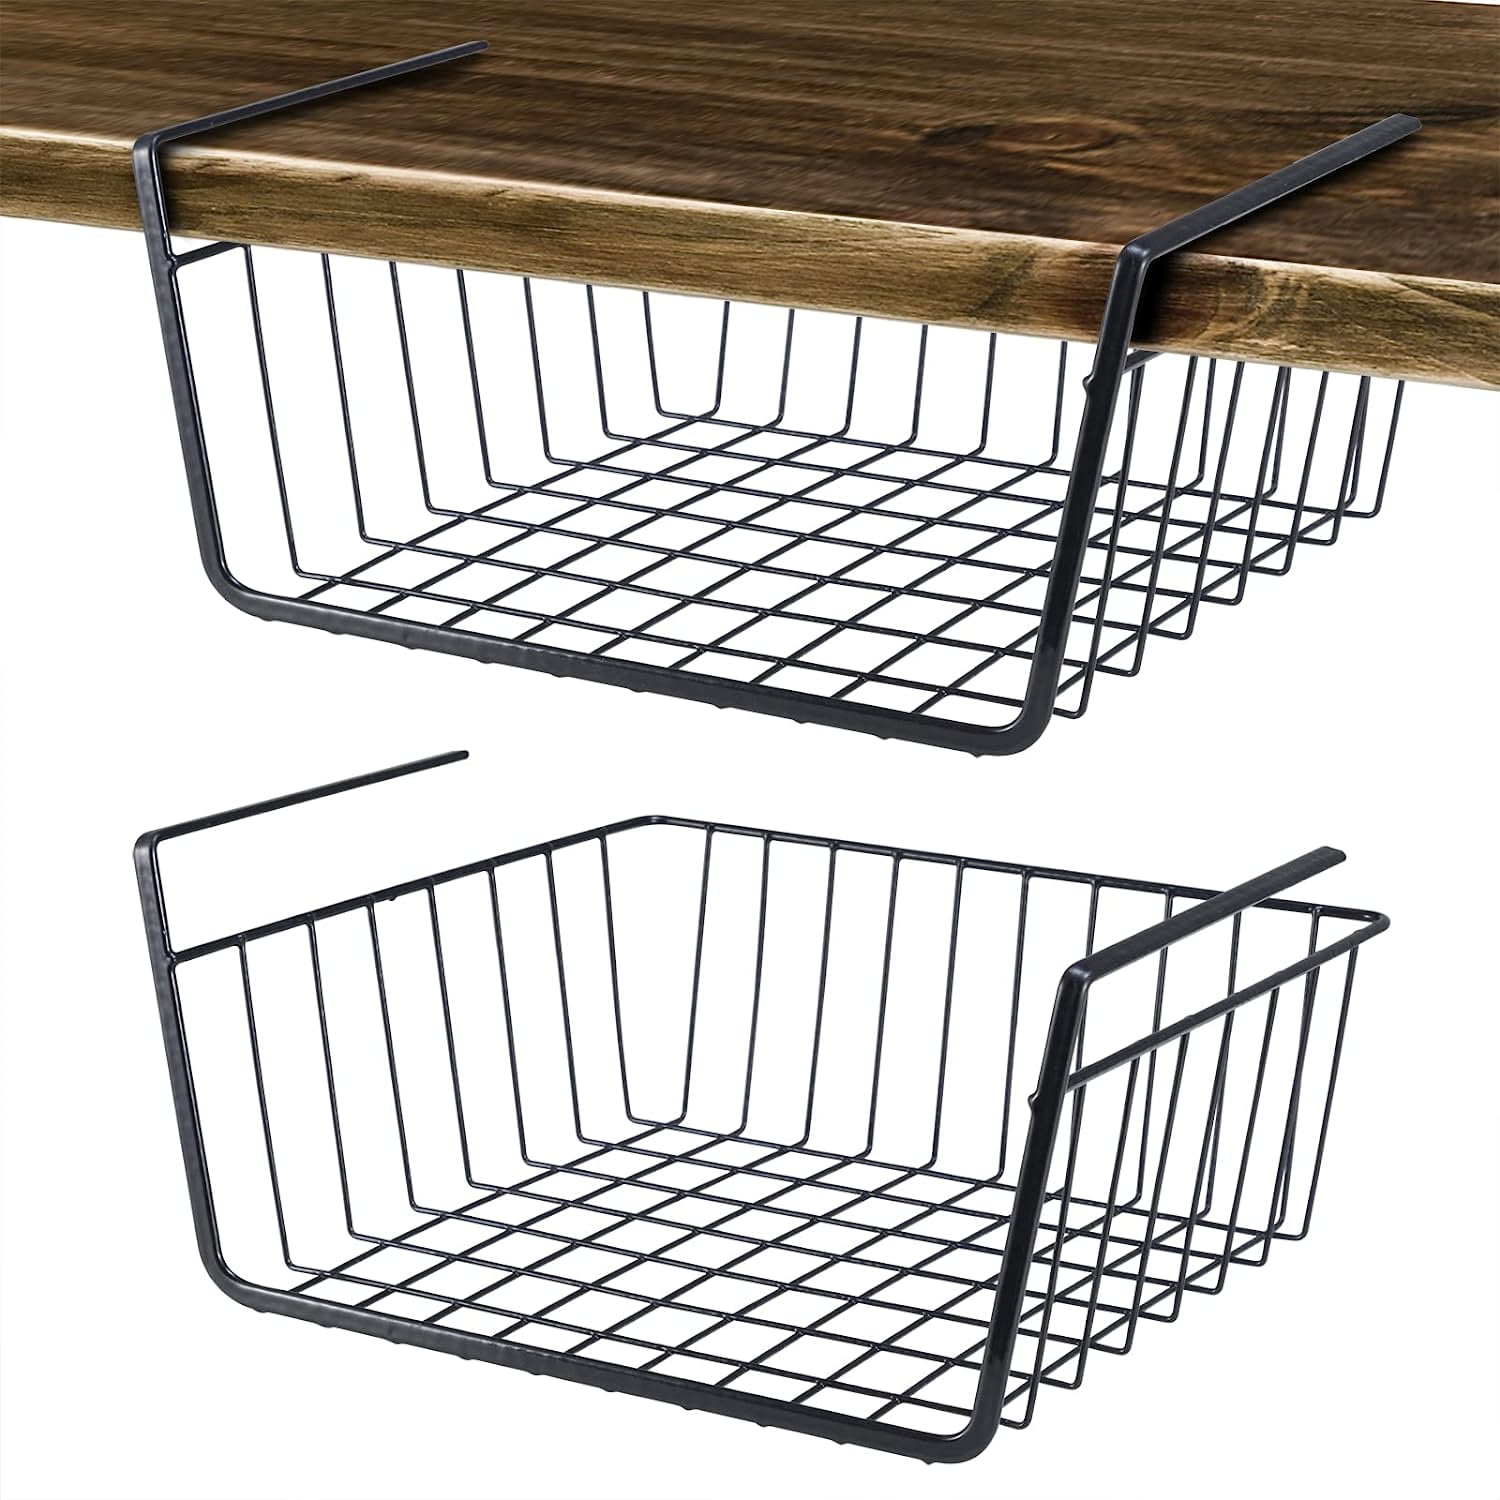 Under Shelf Sliding Basket 11 x 11 x 7